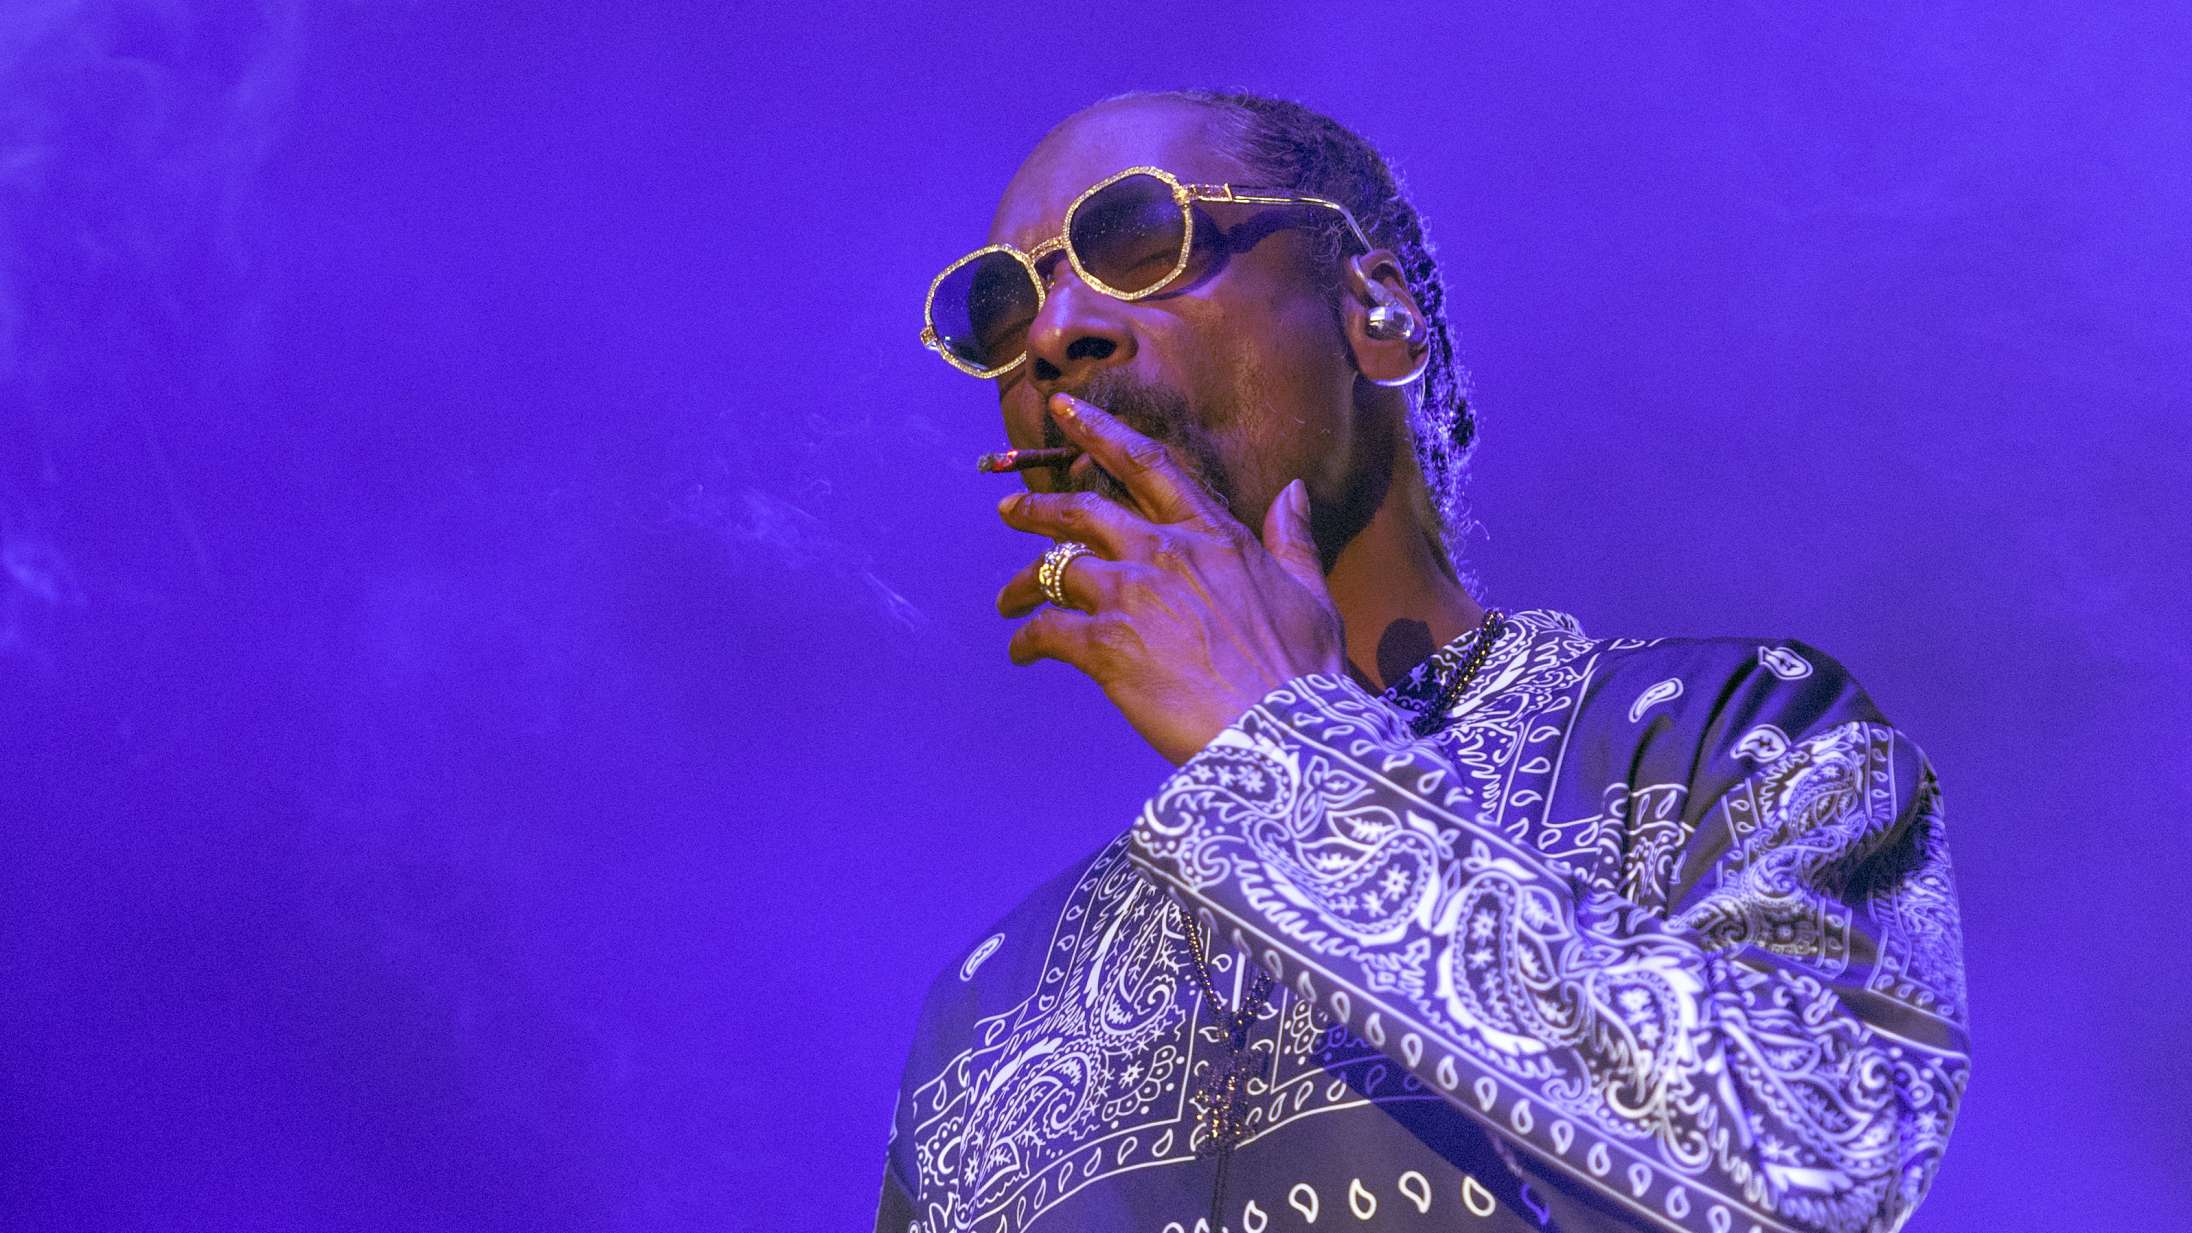 Amerikansk nyhedsvært fyret for at citere Snoop Dogg på live-tv